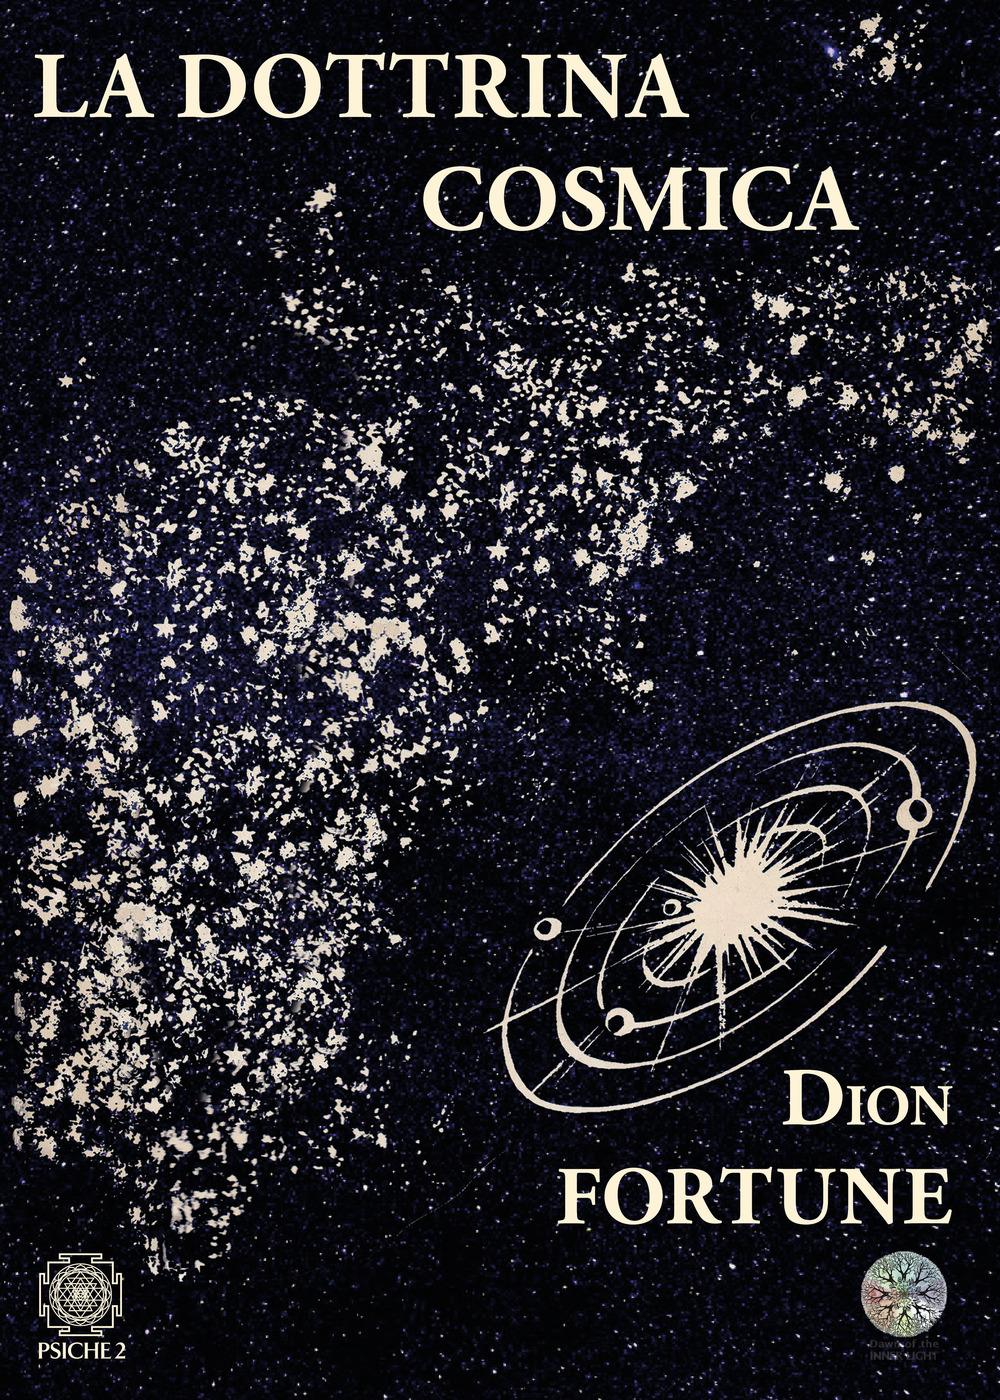 Libri Dion Fortune - La Dottrina Cosmica NUOVO SIGILLATO, EDIZIONE DEL 25/06/2020 SUBITO DISPONIBILE